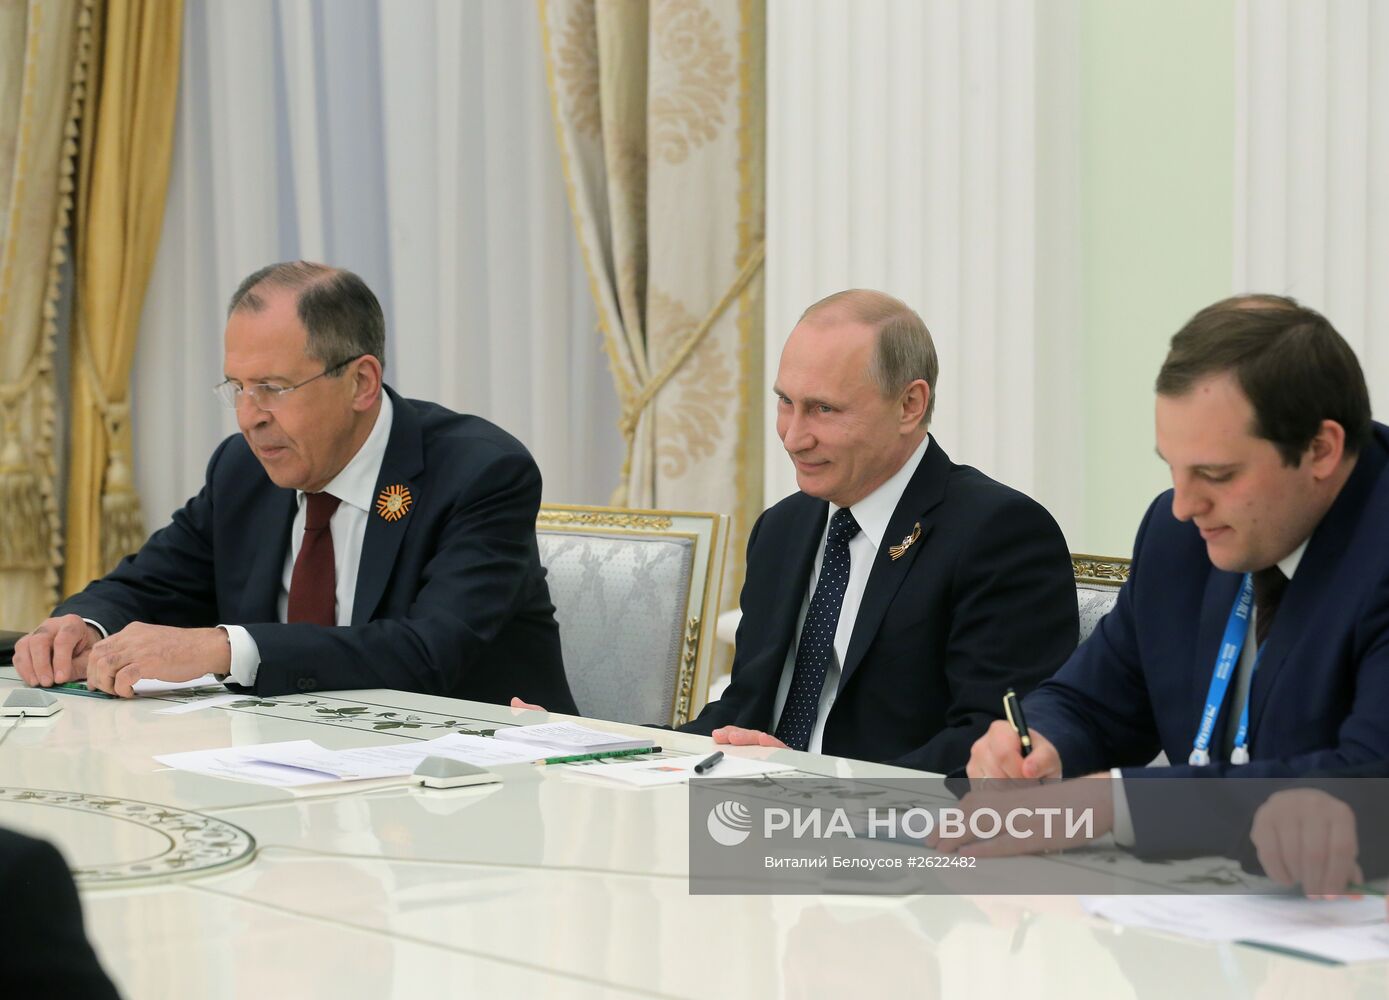 Президент России В.Путин встретился с генеральным Секретарем ООН Пан Ги Муном